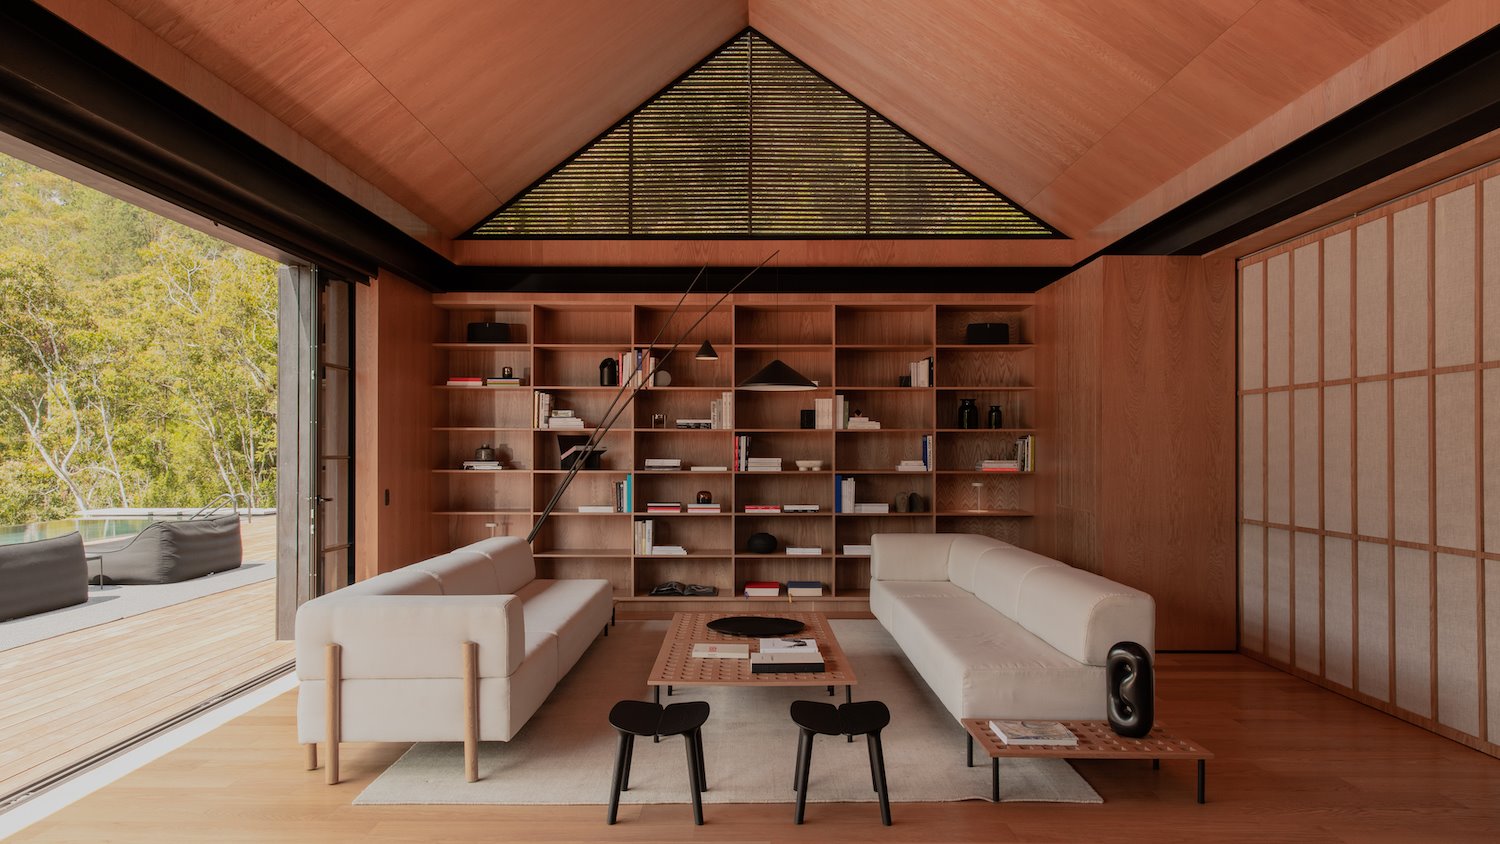 Salon con interiores de madera y sofas de color blanco de la casa del cantante J Balwin en Medellin